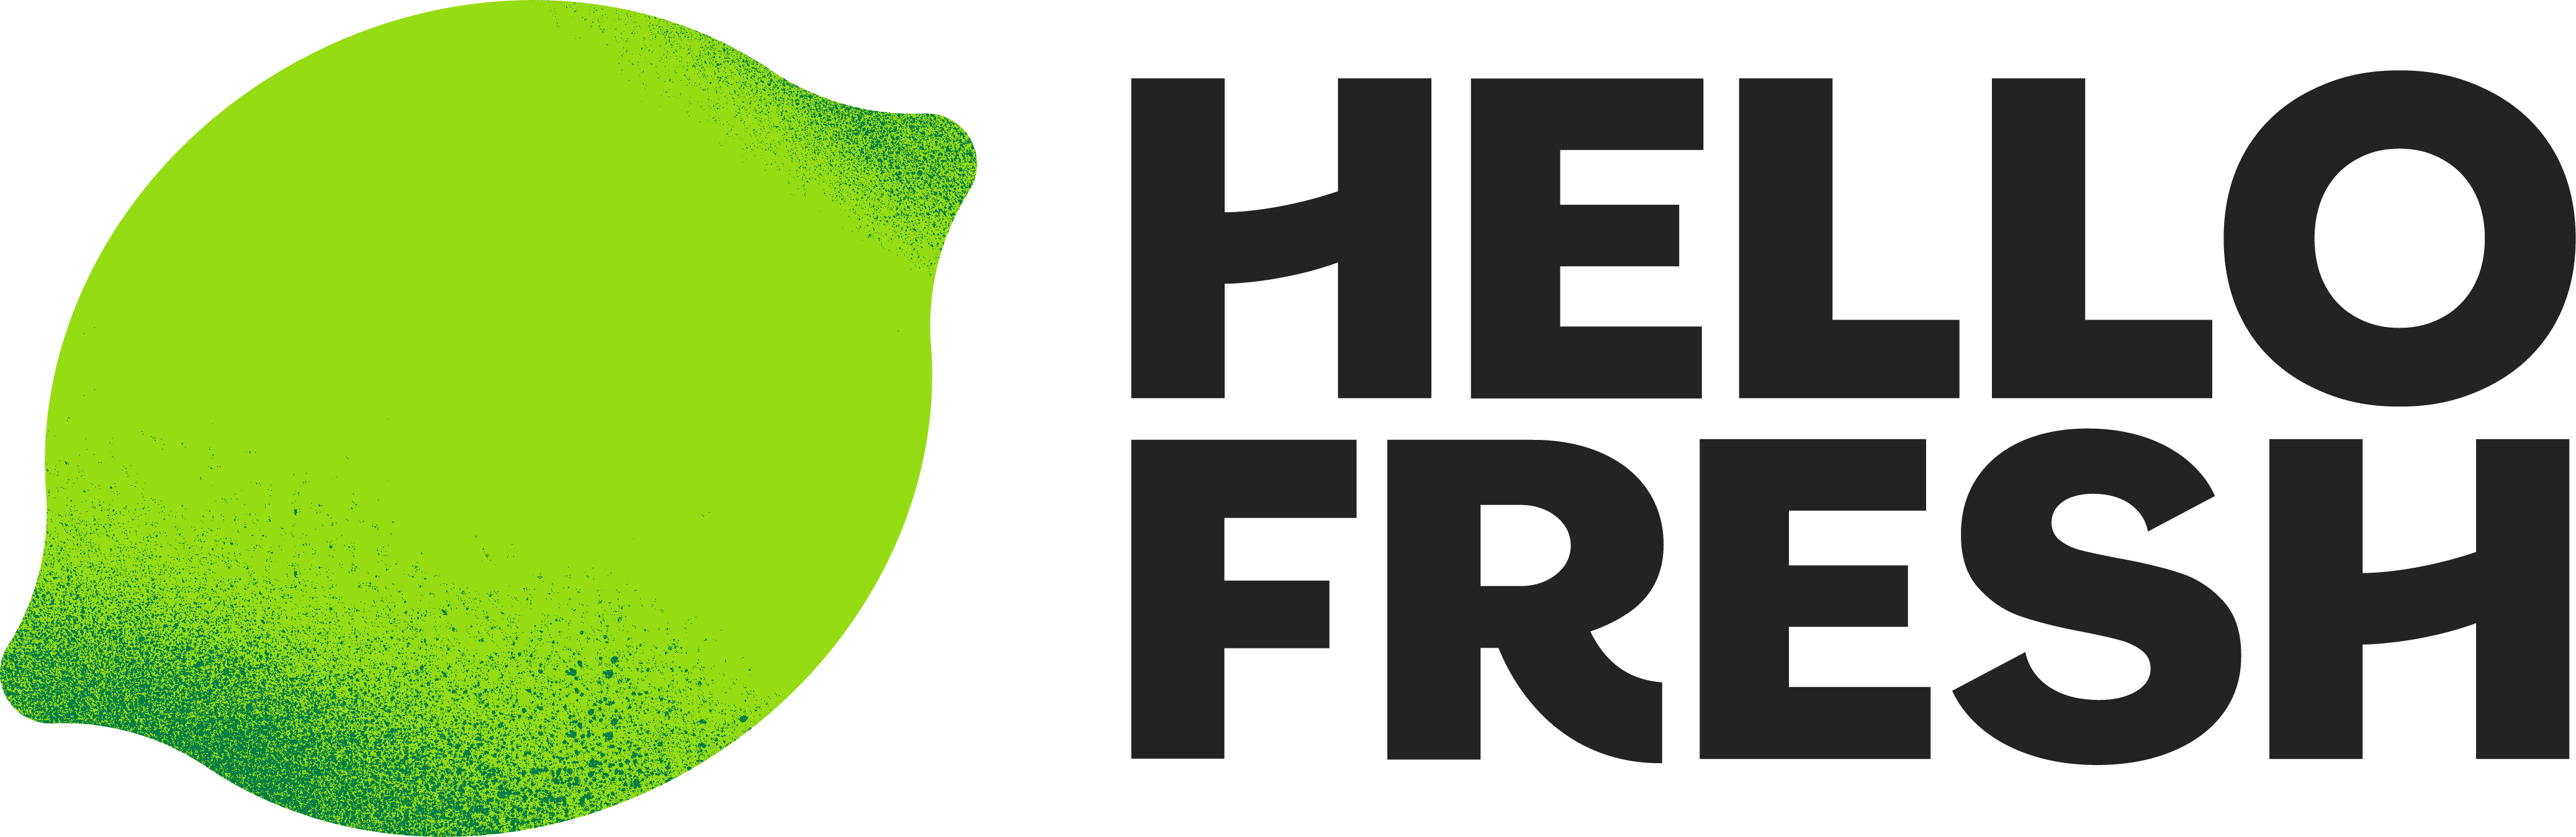 HelloFresh-logo-a2a149bdc1548e071bb89411547914ca